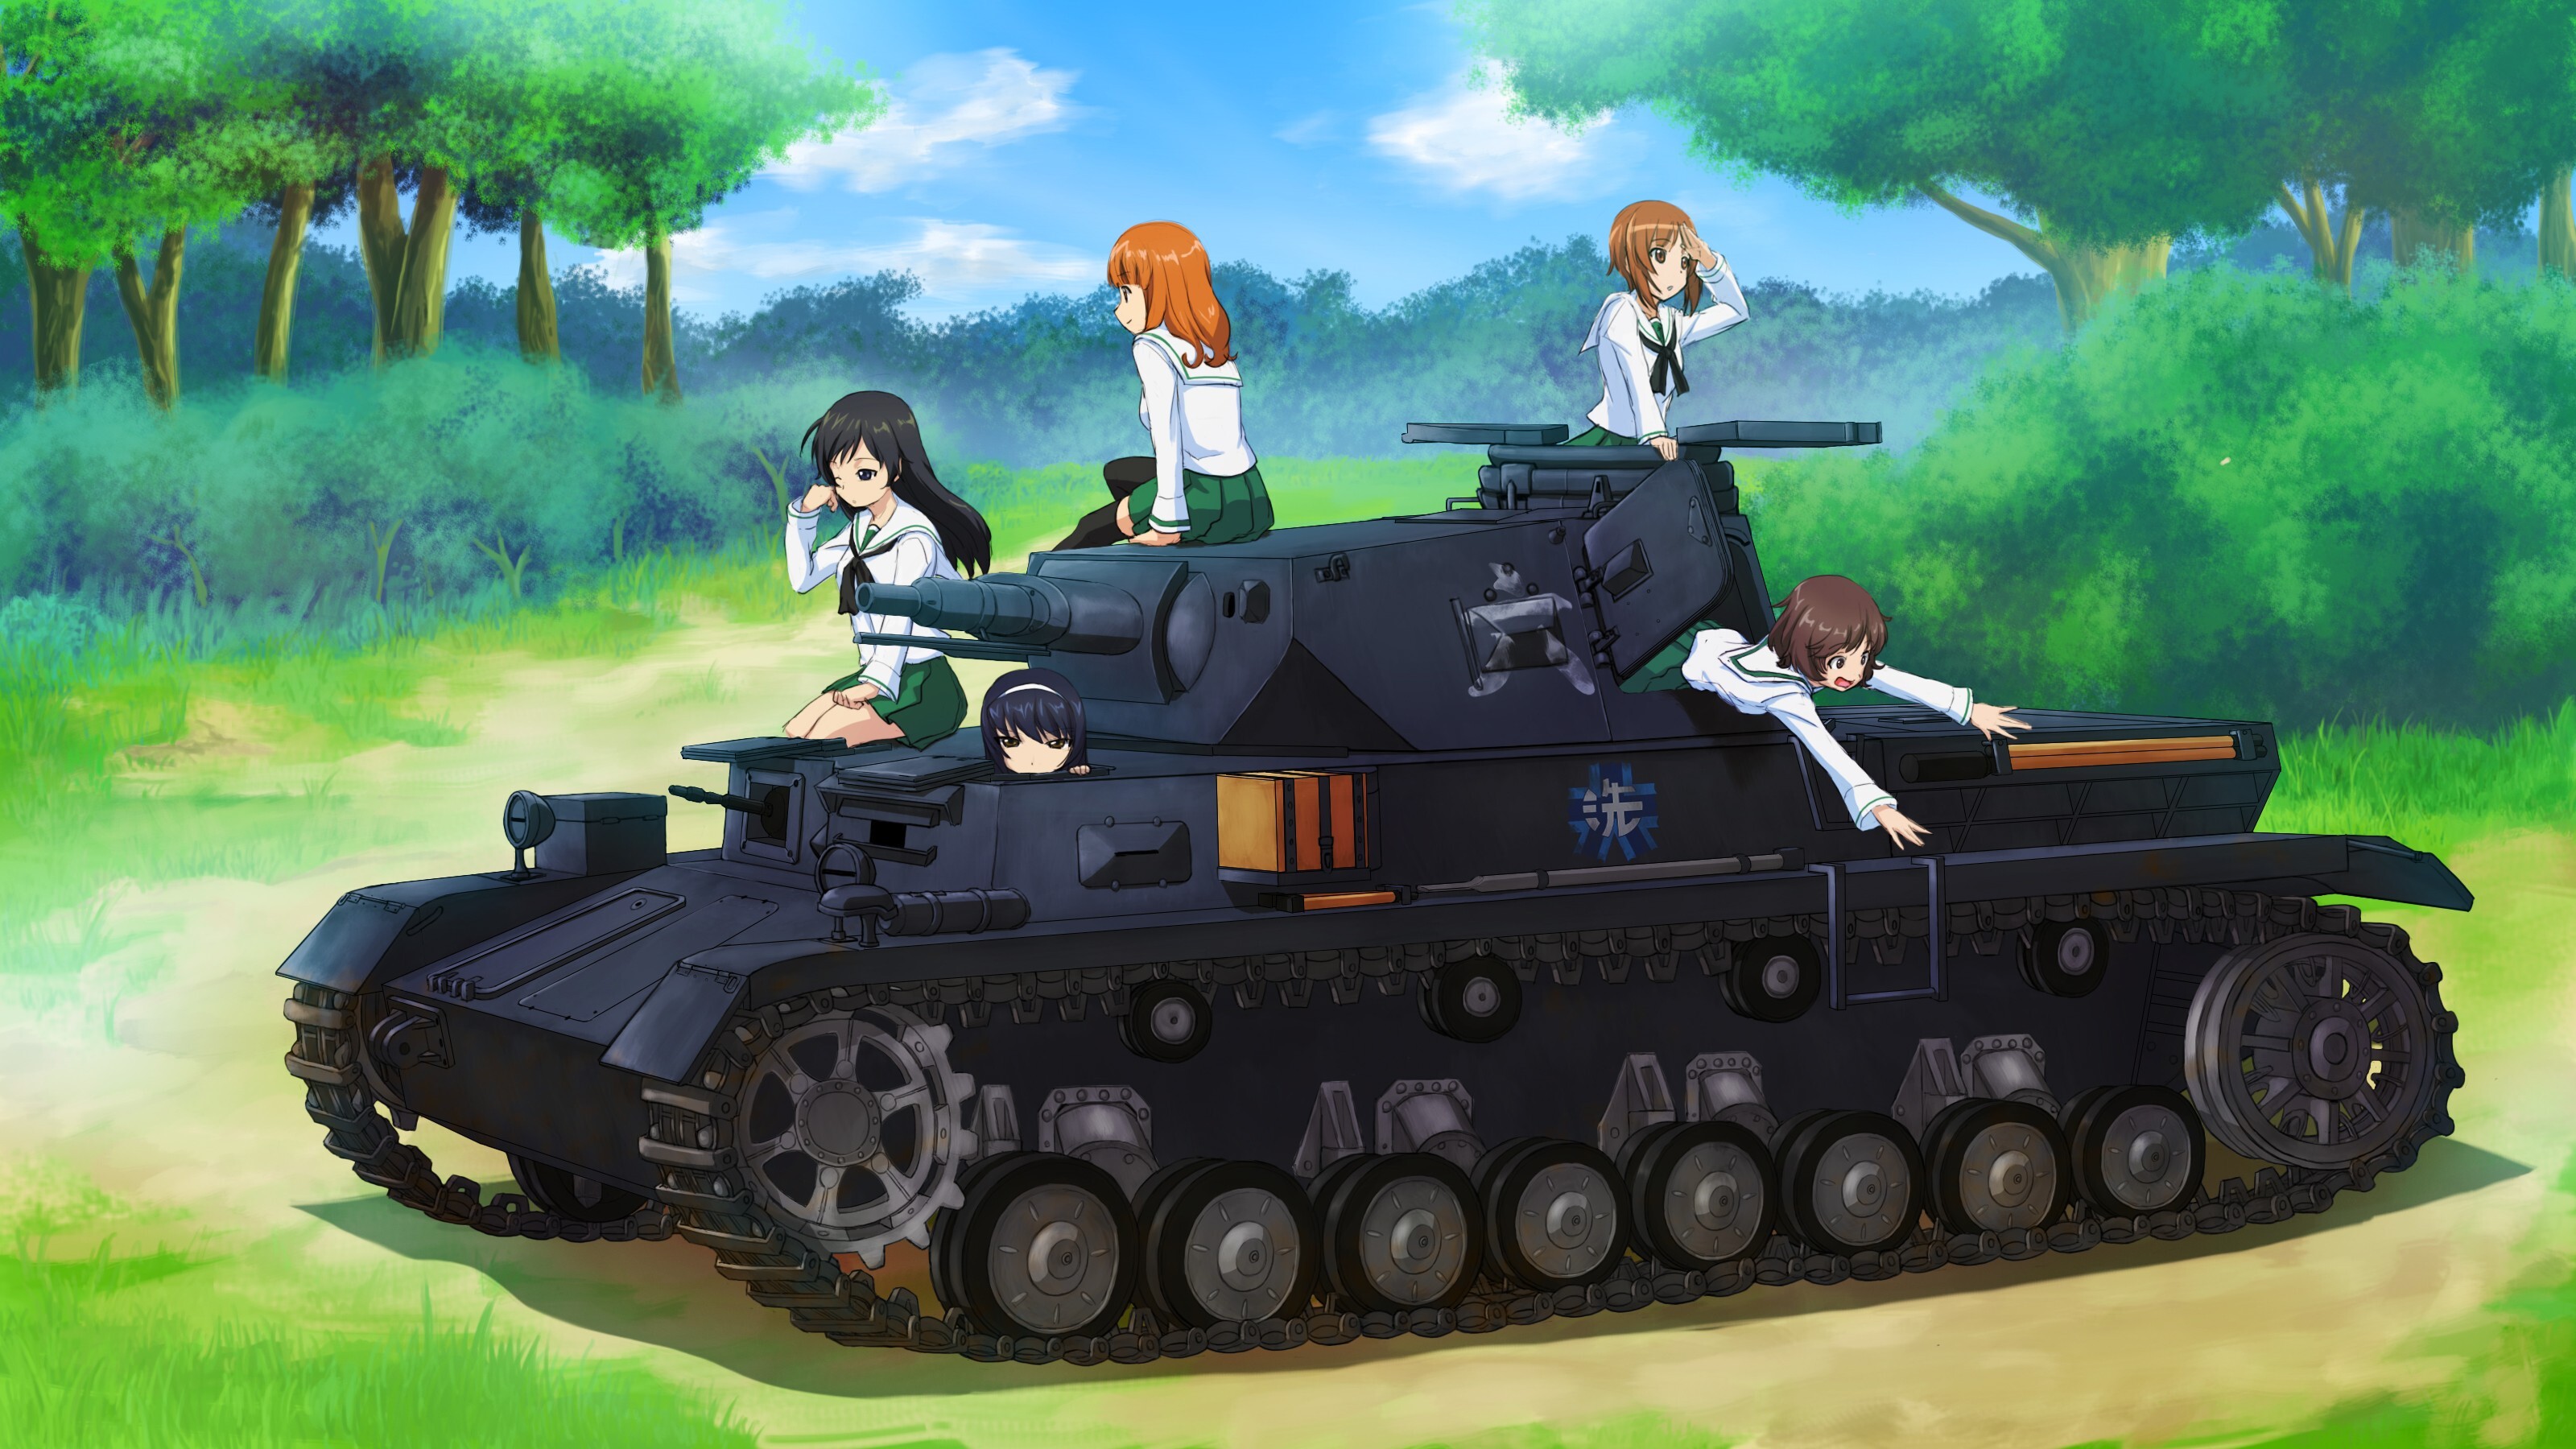 Girls und Panzer: Ooarai Girls Academy, The World War Two tank, Panzerkampfwagen IV. 3200x1800 HD Wallpaper.